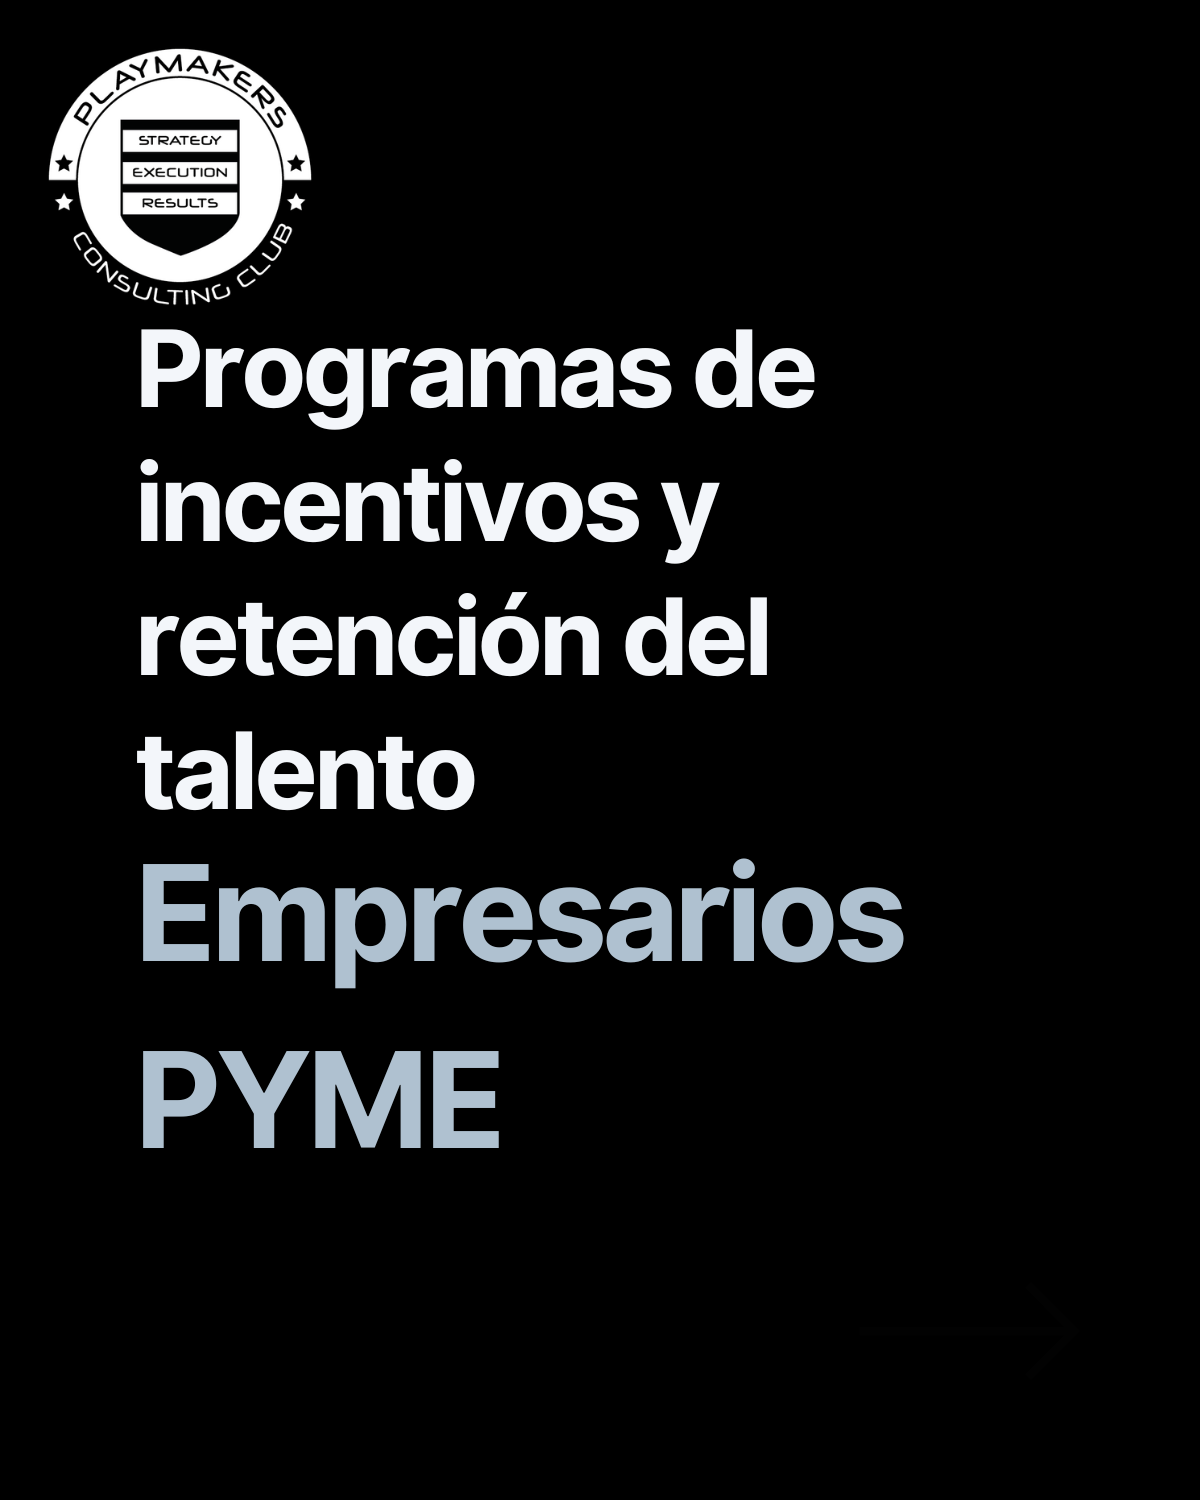 Programas de incentivos y retención del talento para empresarios pyme en España